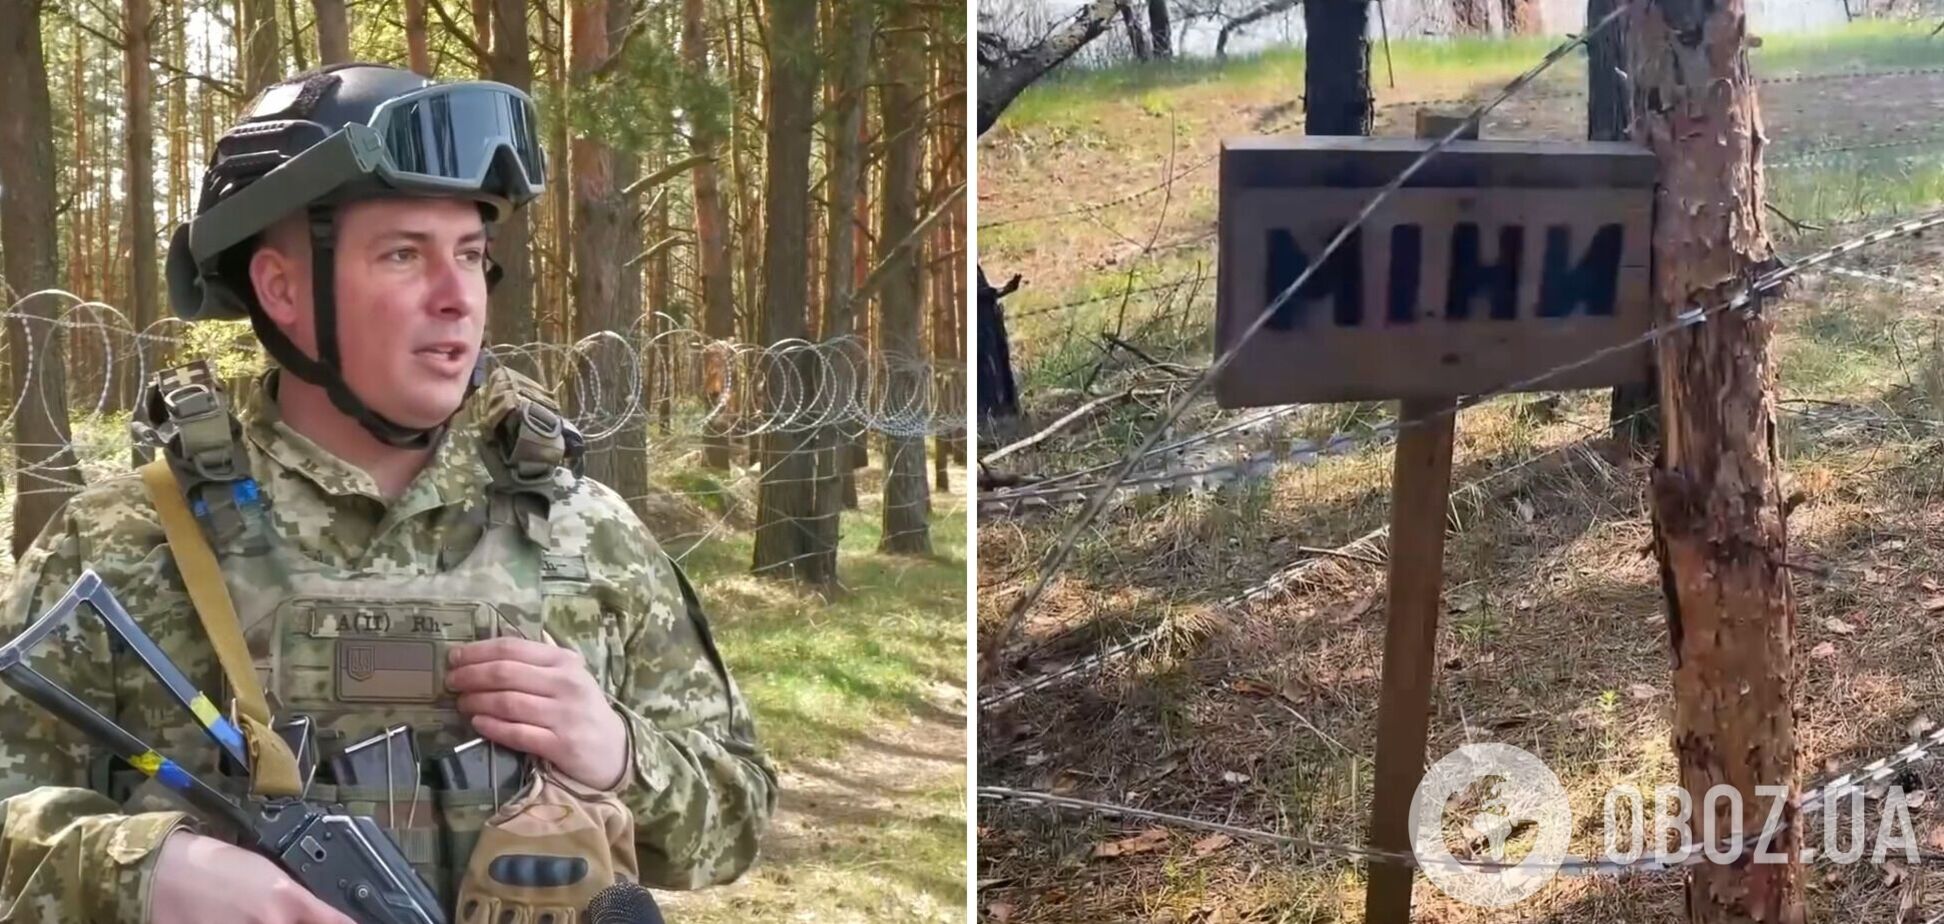 Обстановка контролируемая: пограничники показали, как патрулируют границу с Беларусью. Фото и видео